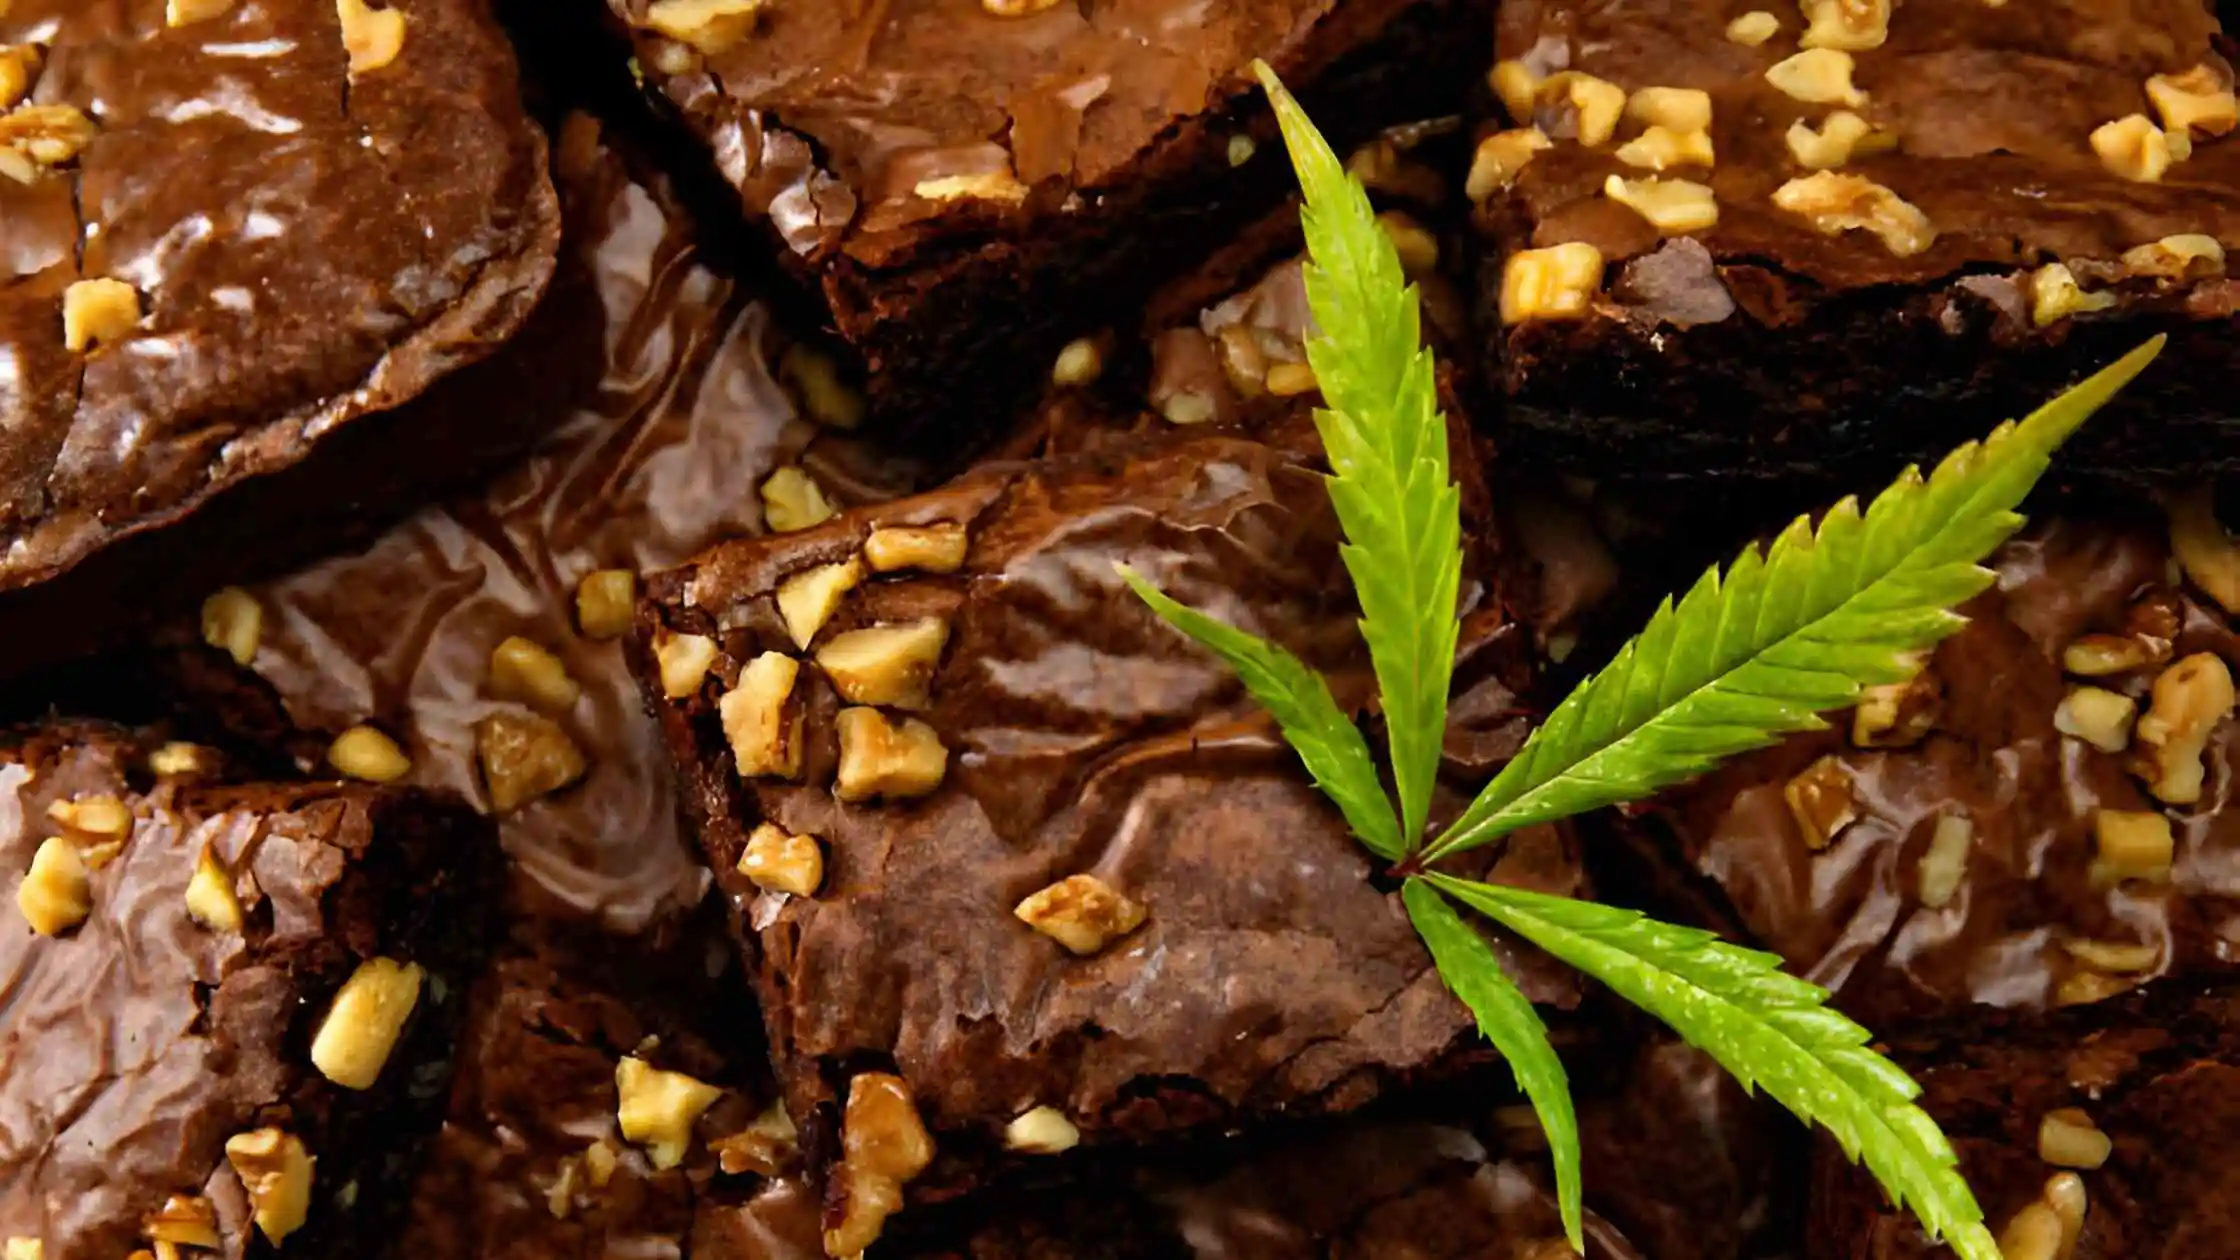 How to Make Weed Brownies?